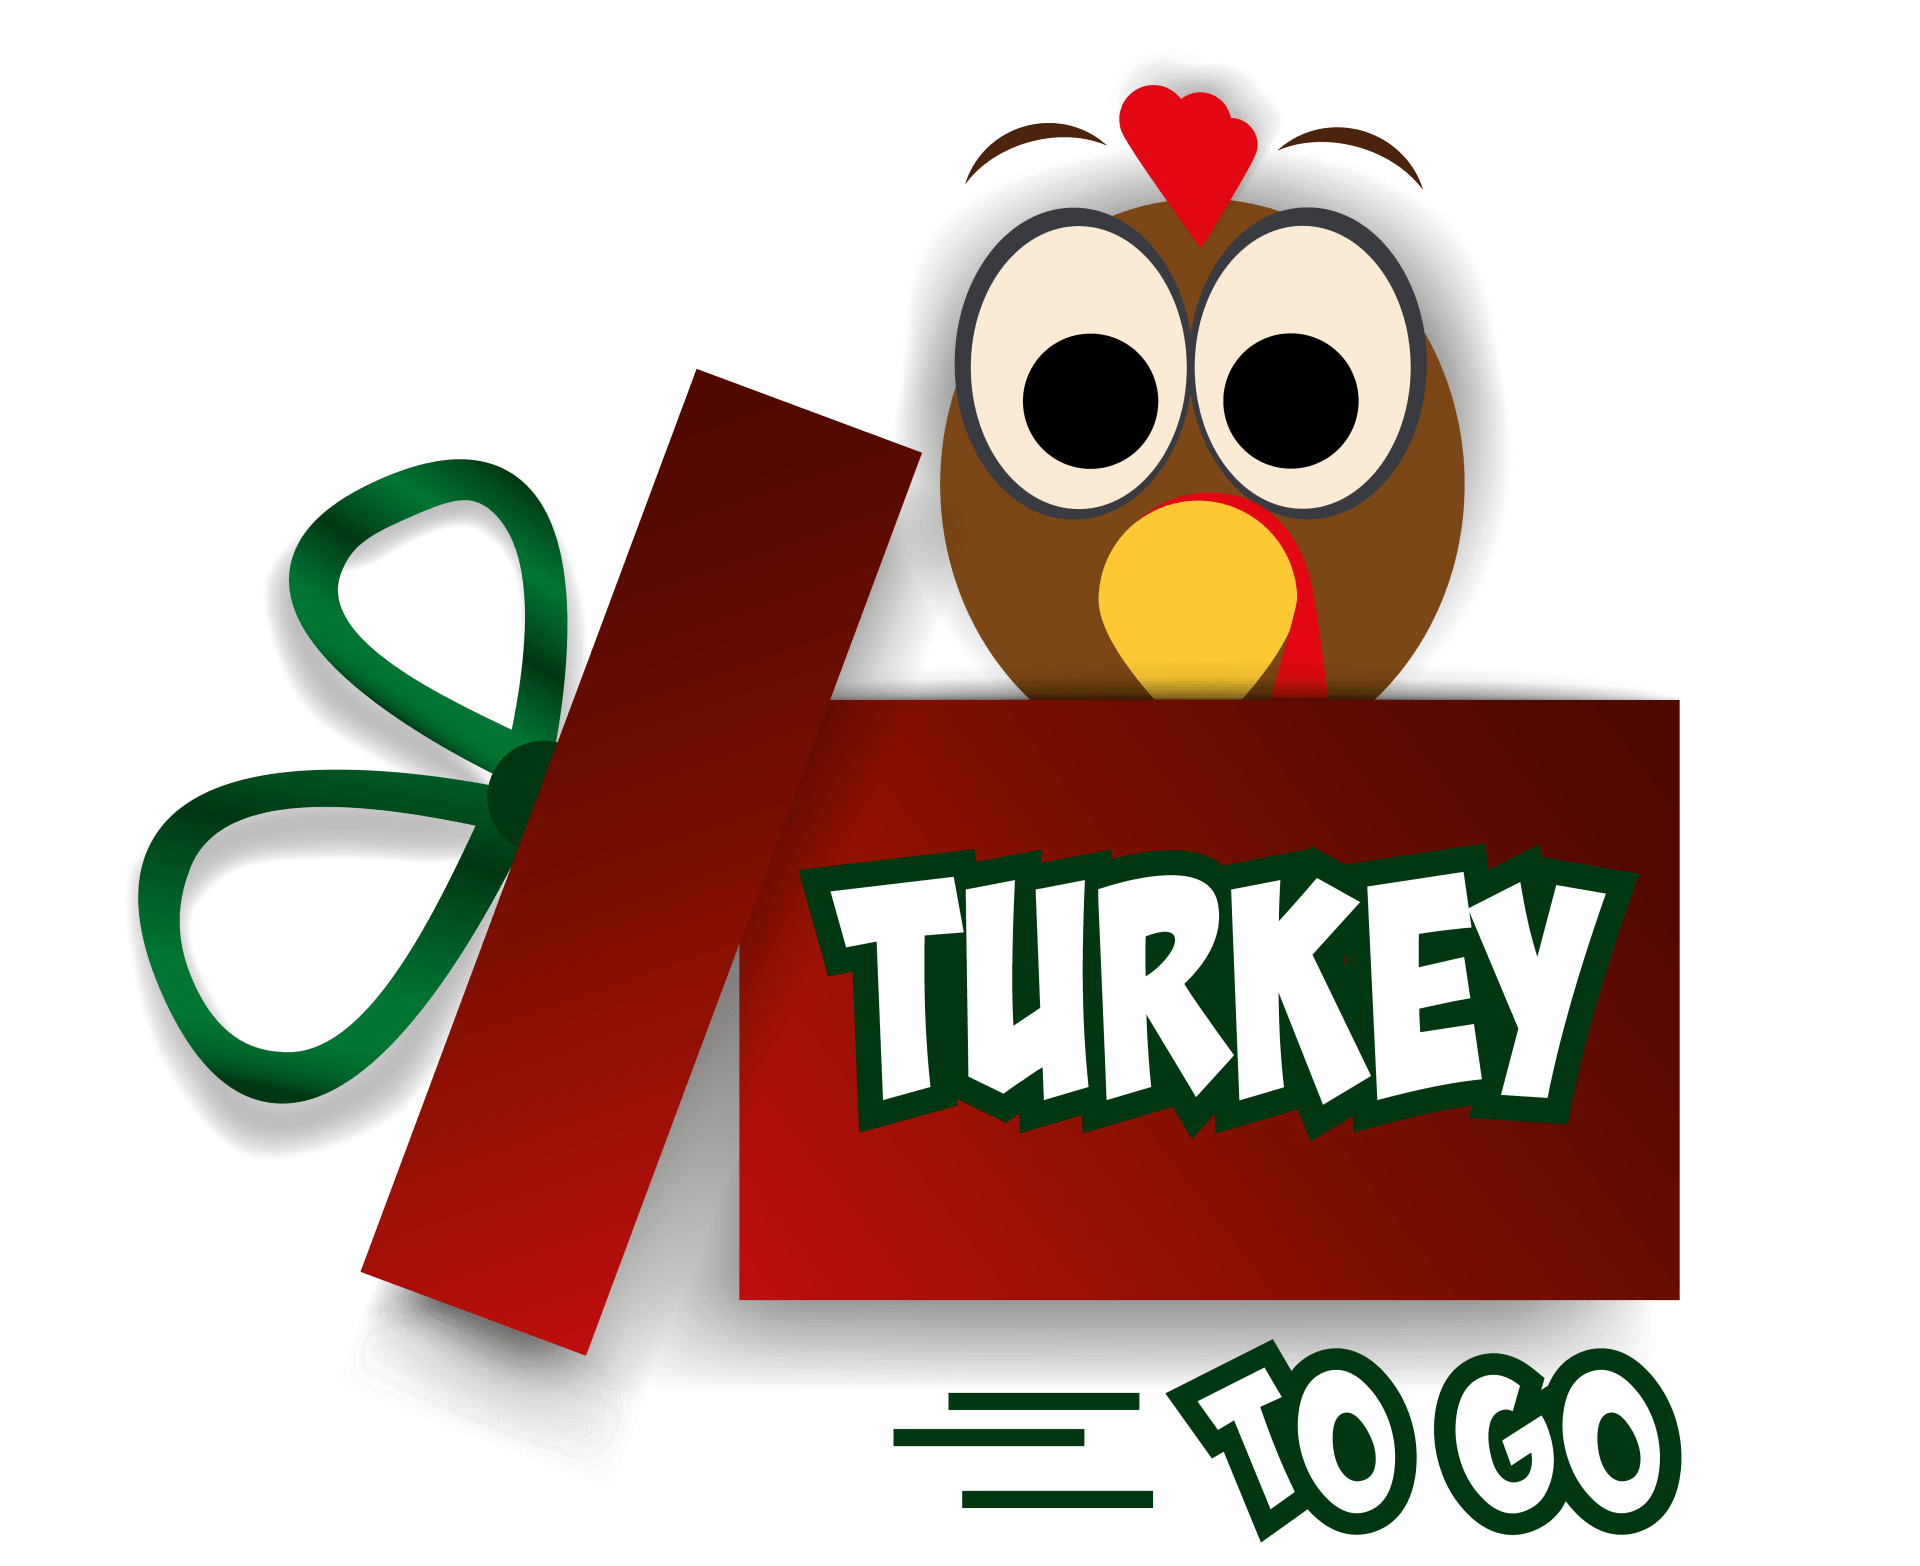 Turkey to go